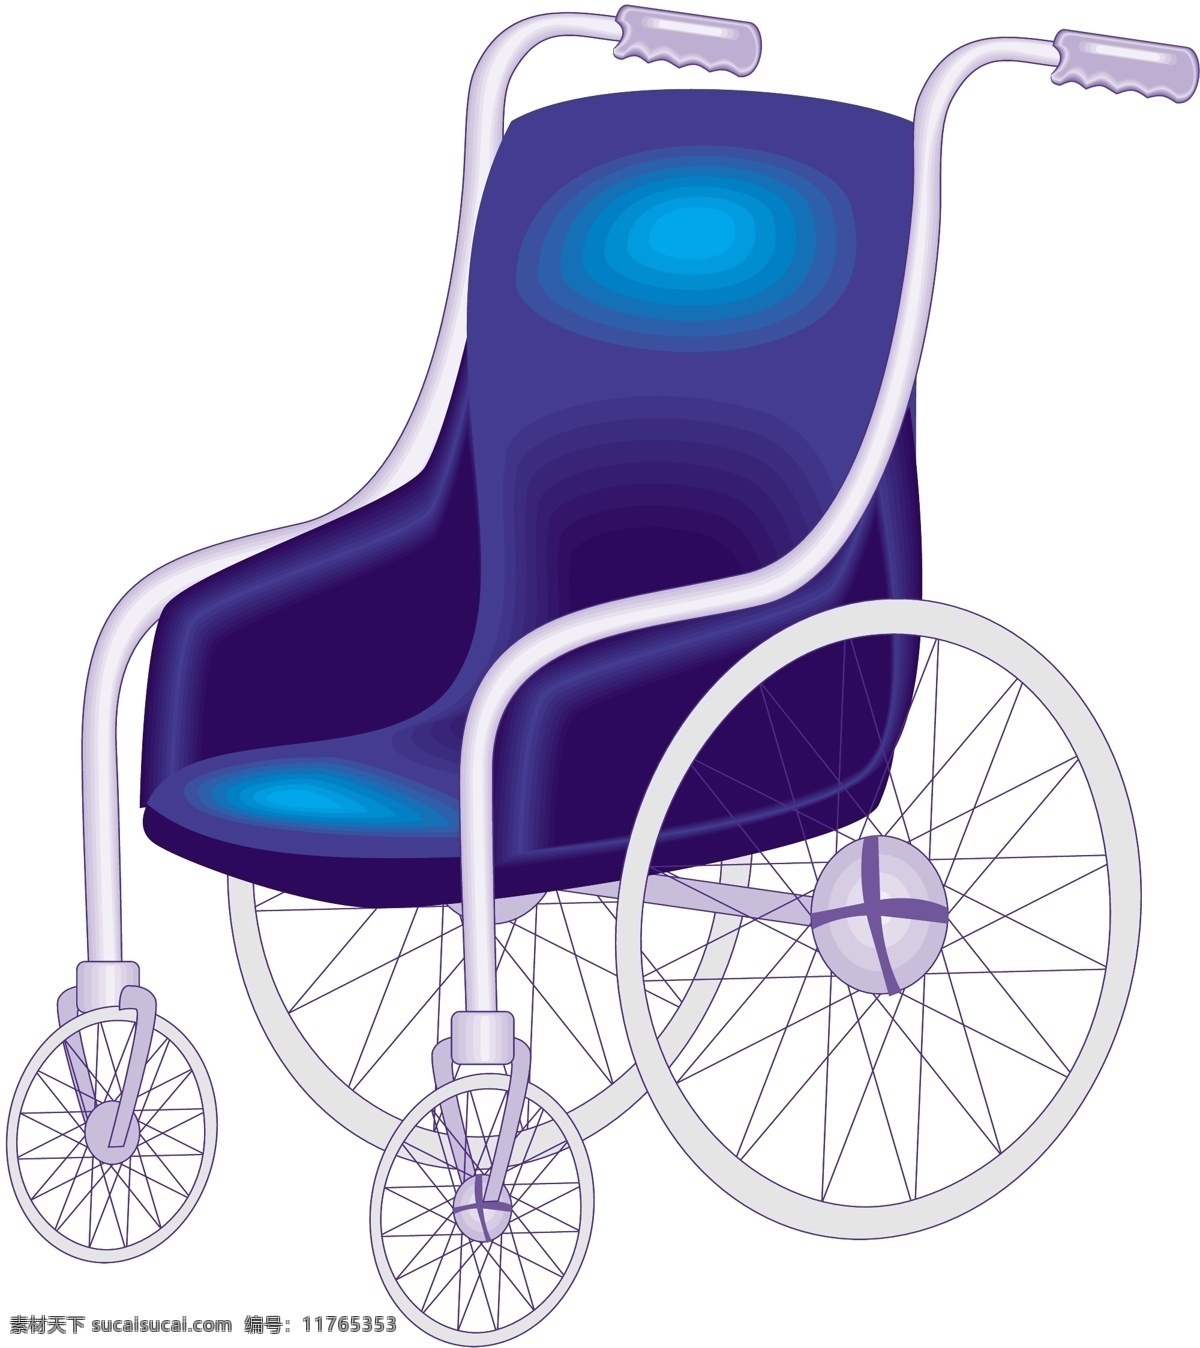 轮椅 医疗器材 矢量素材 eps0003 设计素材 医疗卫生 矢量图库 白色